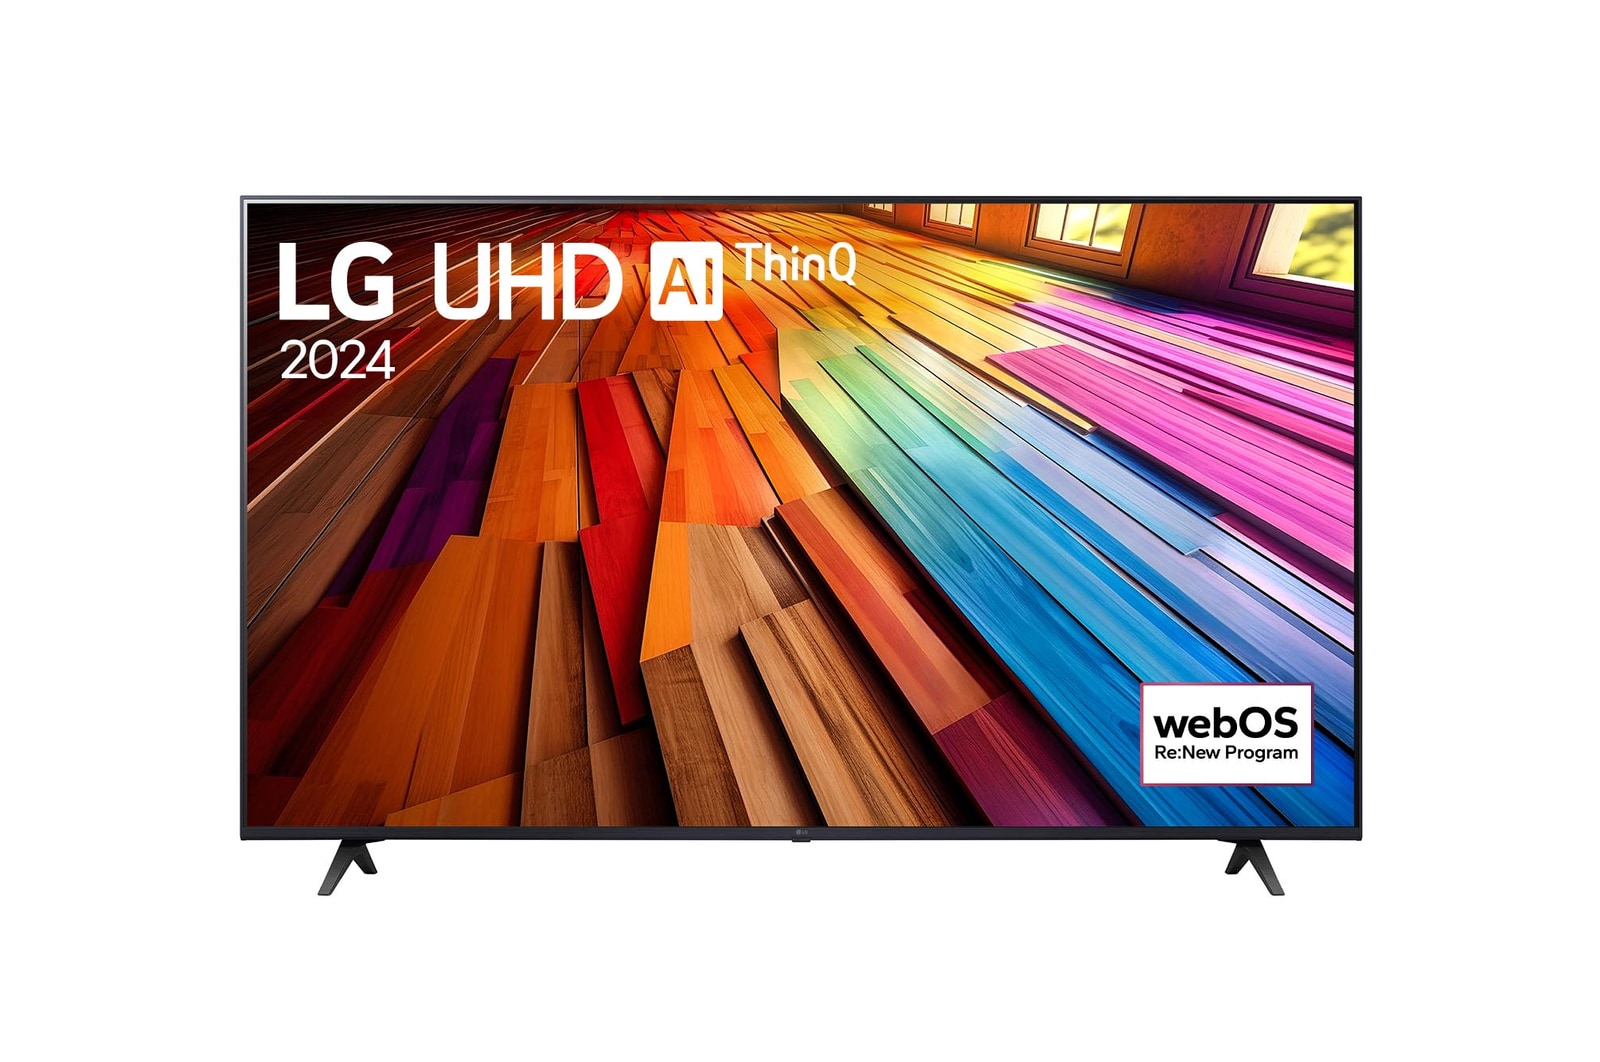 Vista frontal del televisor LG UHD, UT80 con el texto de LG UHD AI ThinQ, 2024, y el logotipo de webOS Re: Nuevo Programa en pantalla.